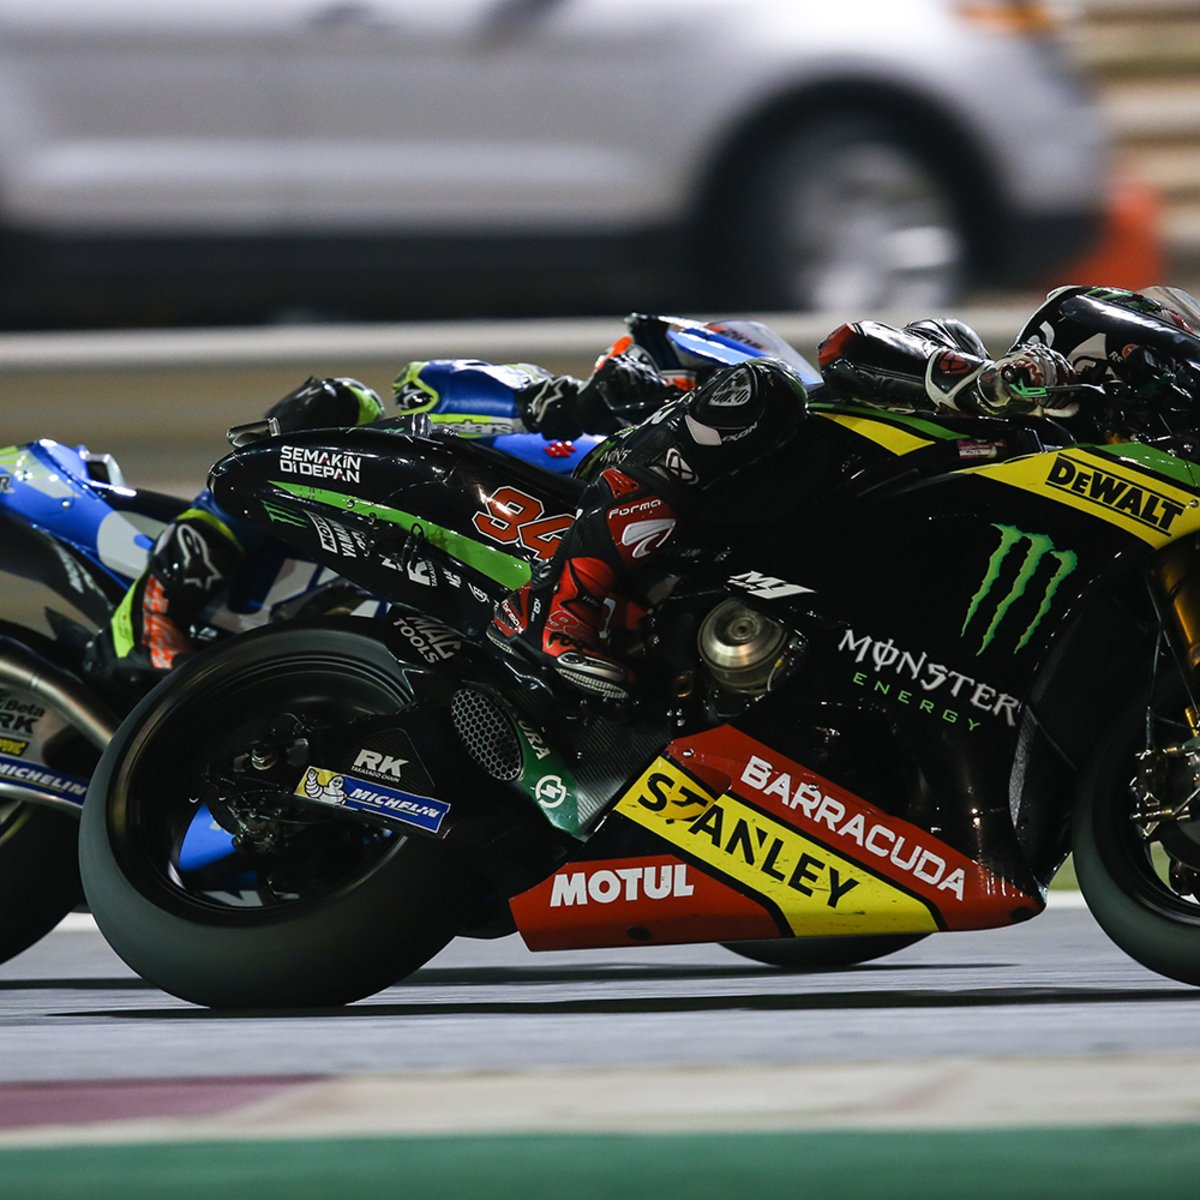 P10 Folger vergeigt besseres Ergebnis beim MotoGP-Debüt in Katar zu Rennbeginn